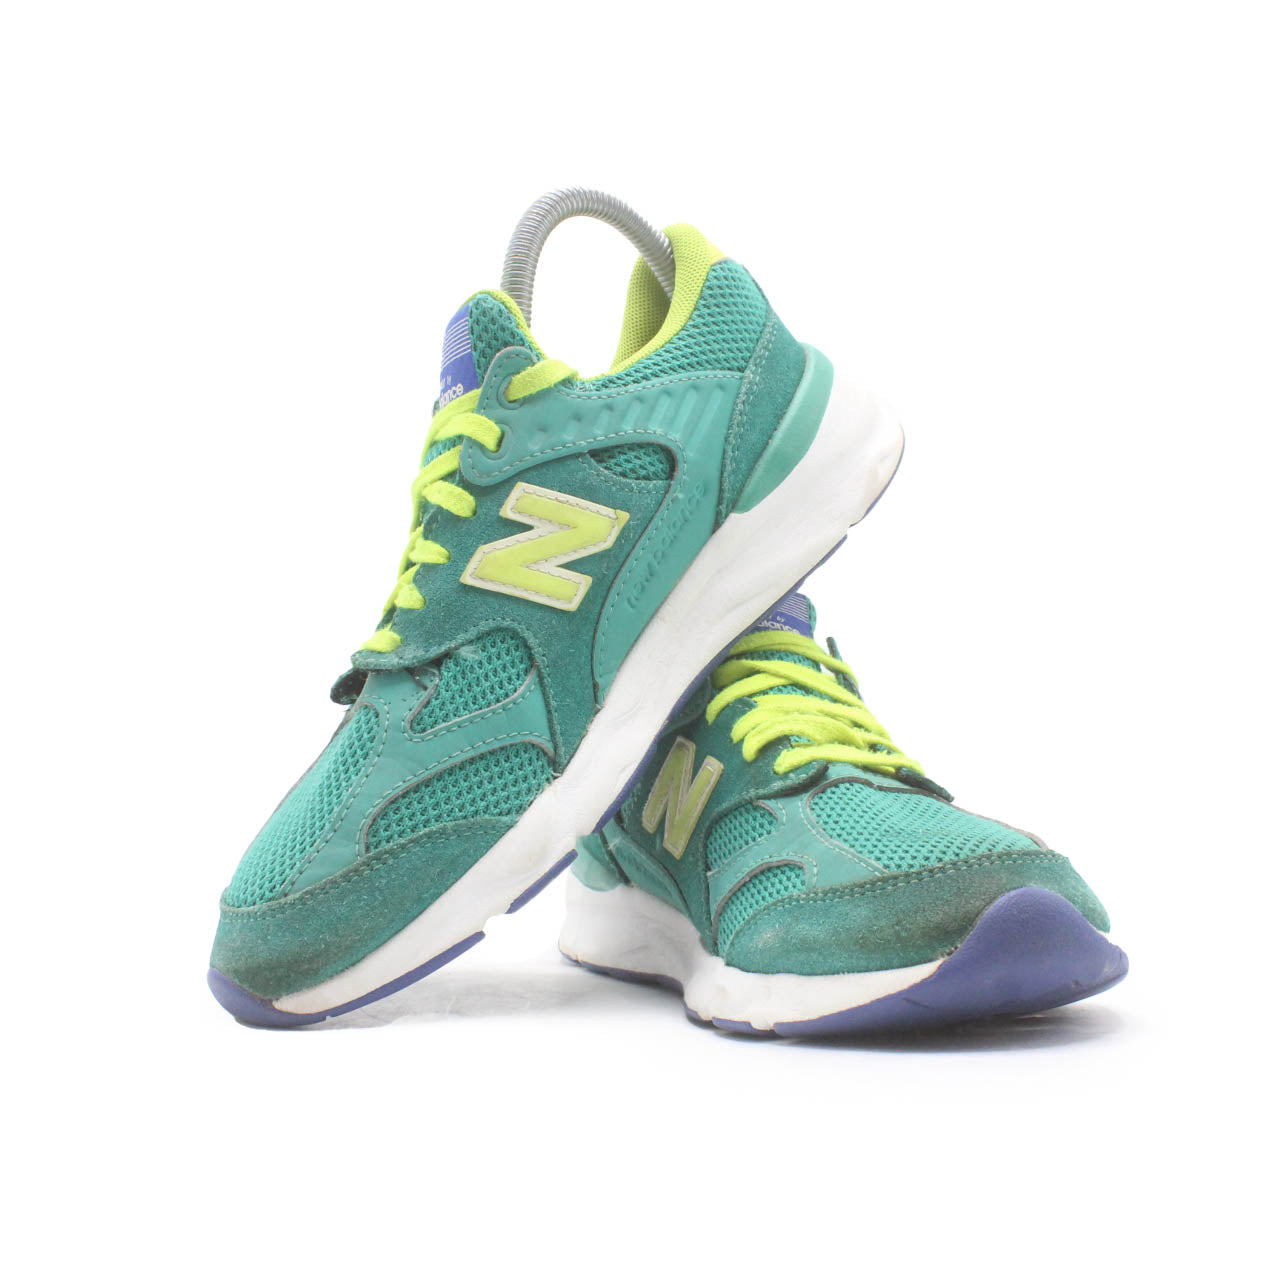 New Balance X90 Running Shoe